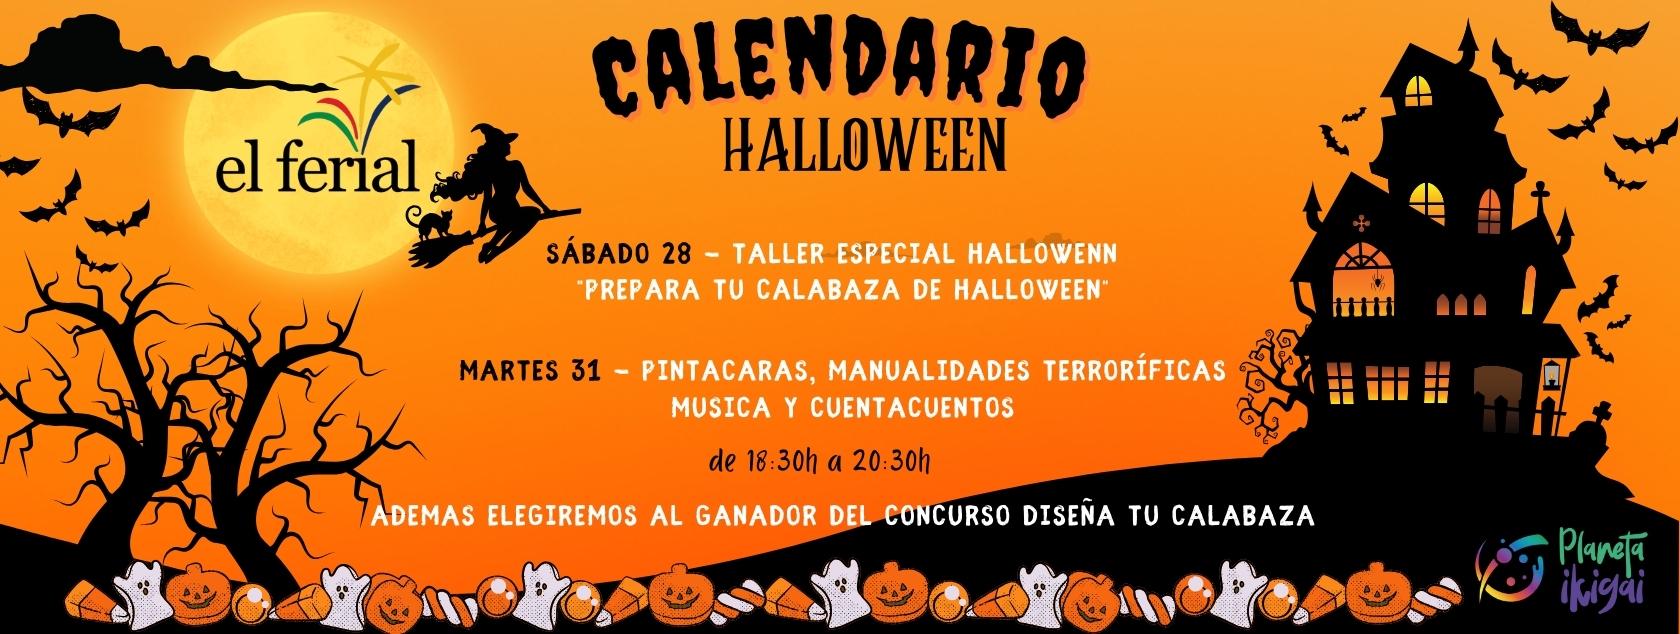 Calendario Halloween en CC El Ferial